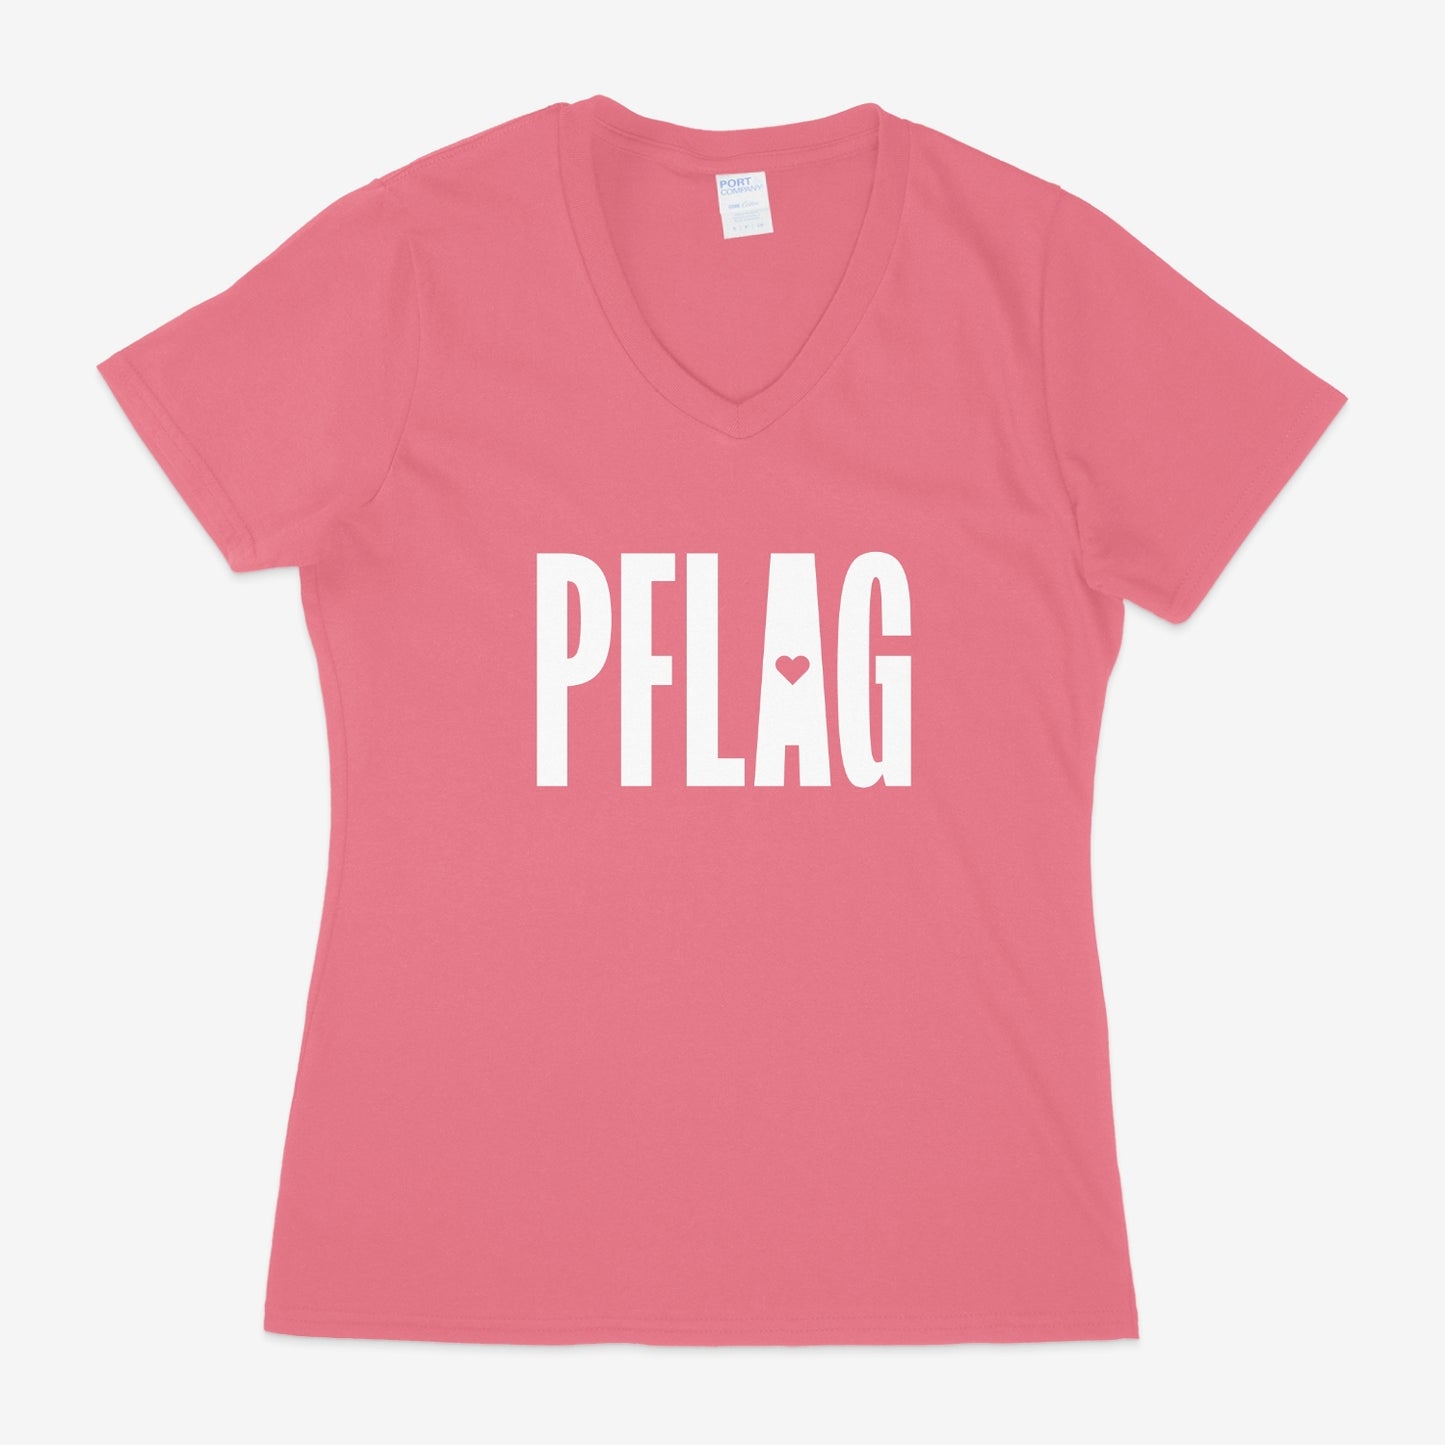 PFLAG Logo - Fitted-Cut V-Neck Short Sleeve T-Shirt